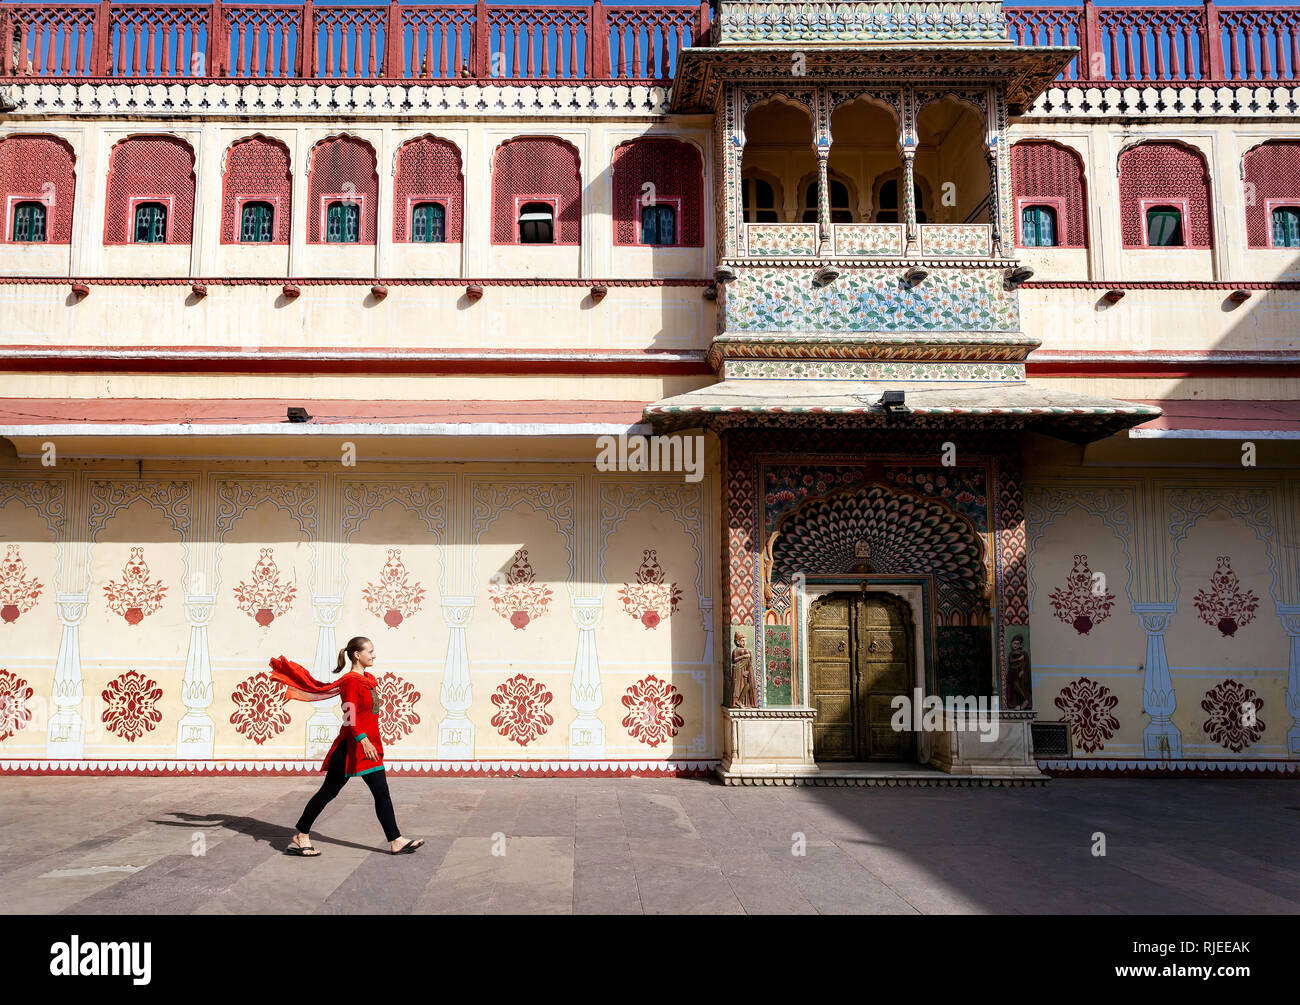 Femme au foulard rouge marche sur la place de palais de la ville de Jaipur, Rajasthan, Inde Banque D'Images